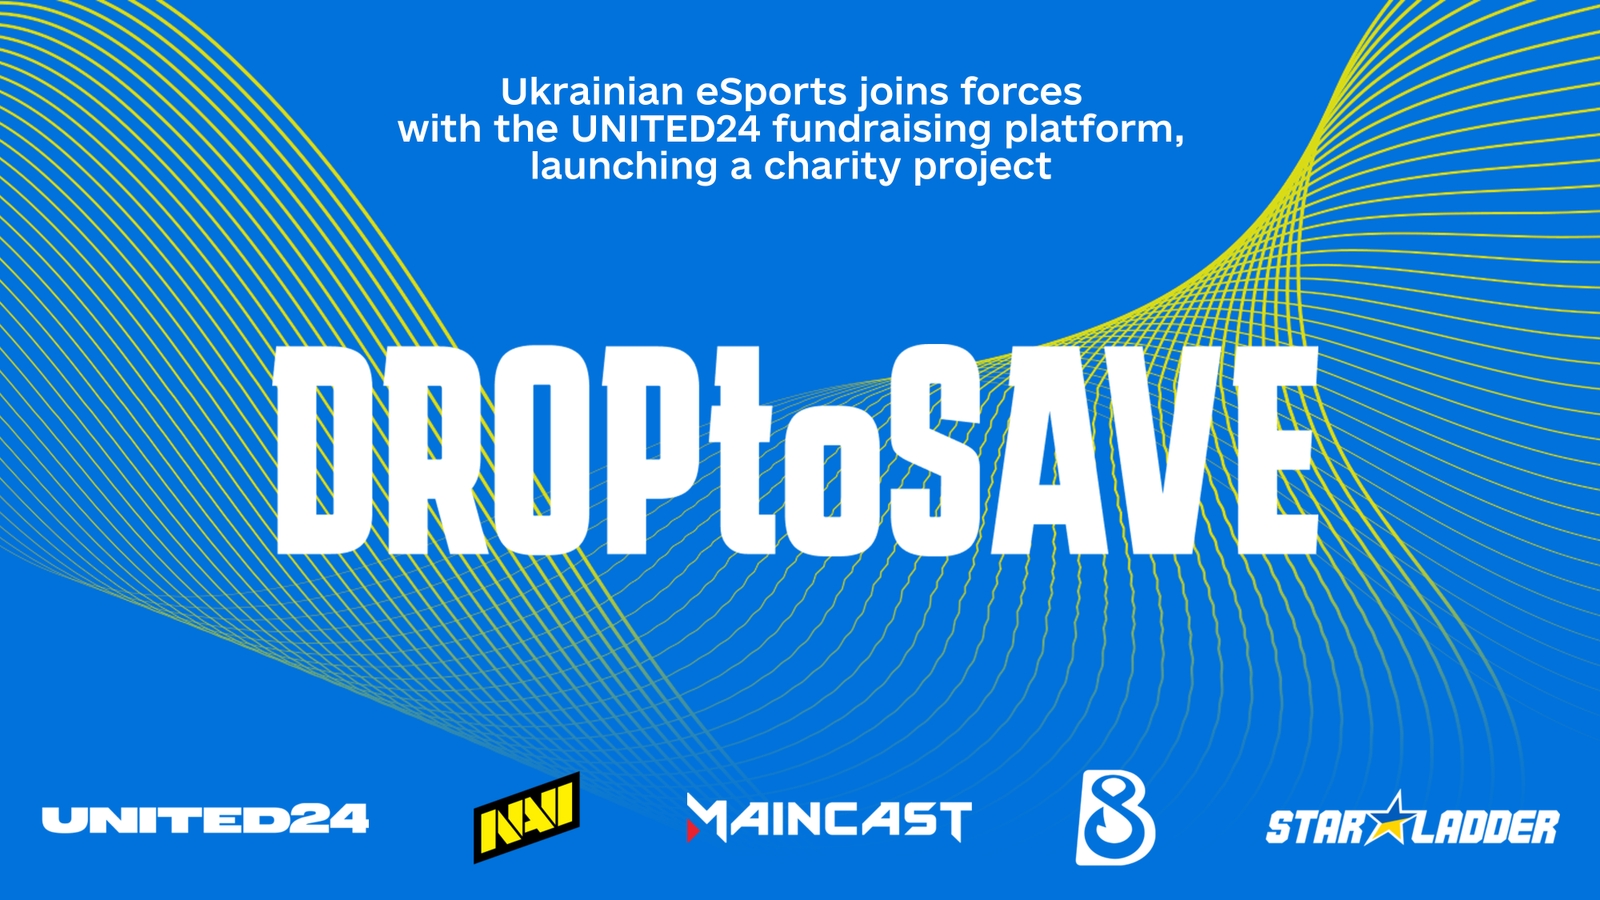 Ukrainian eSports Supports UNITED24